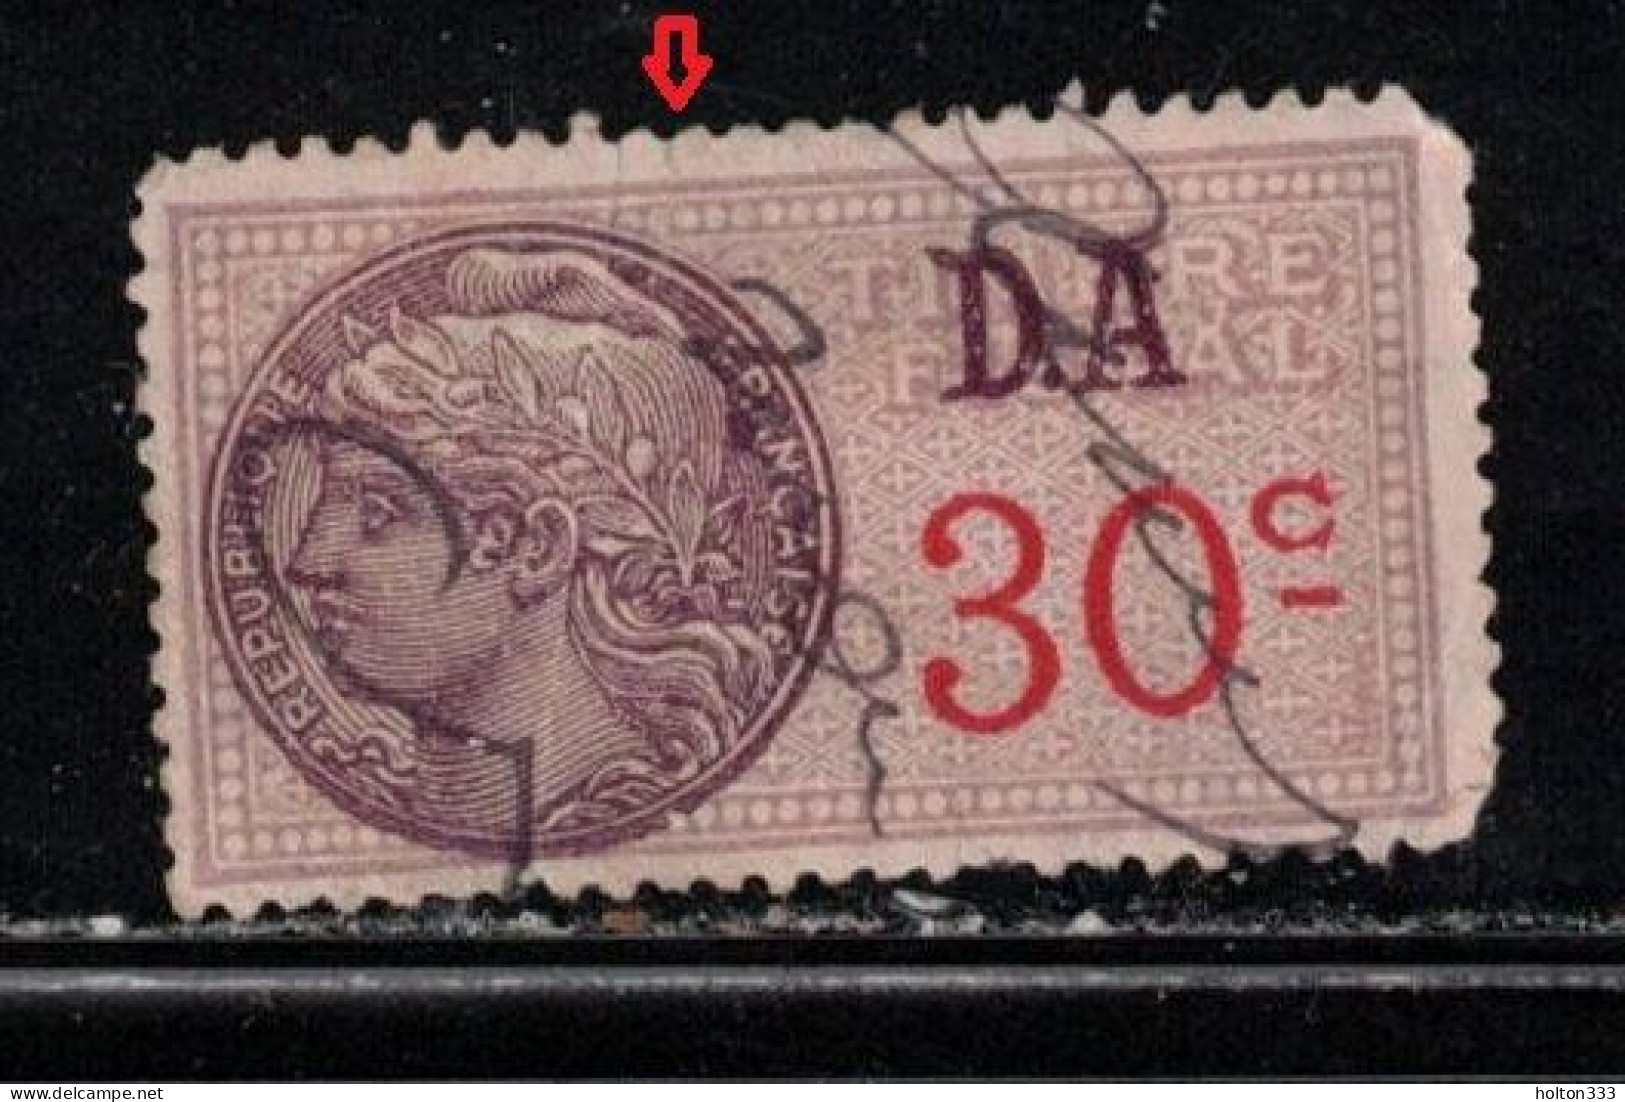 FRANCE Scott # ??? Used Revenue Stamp - Small Tear Top Center - Marche Da Bollo